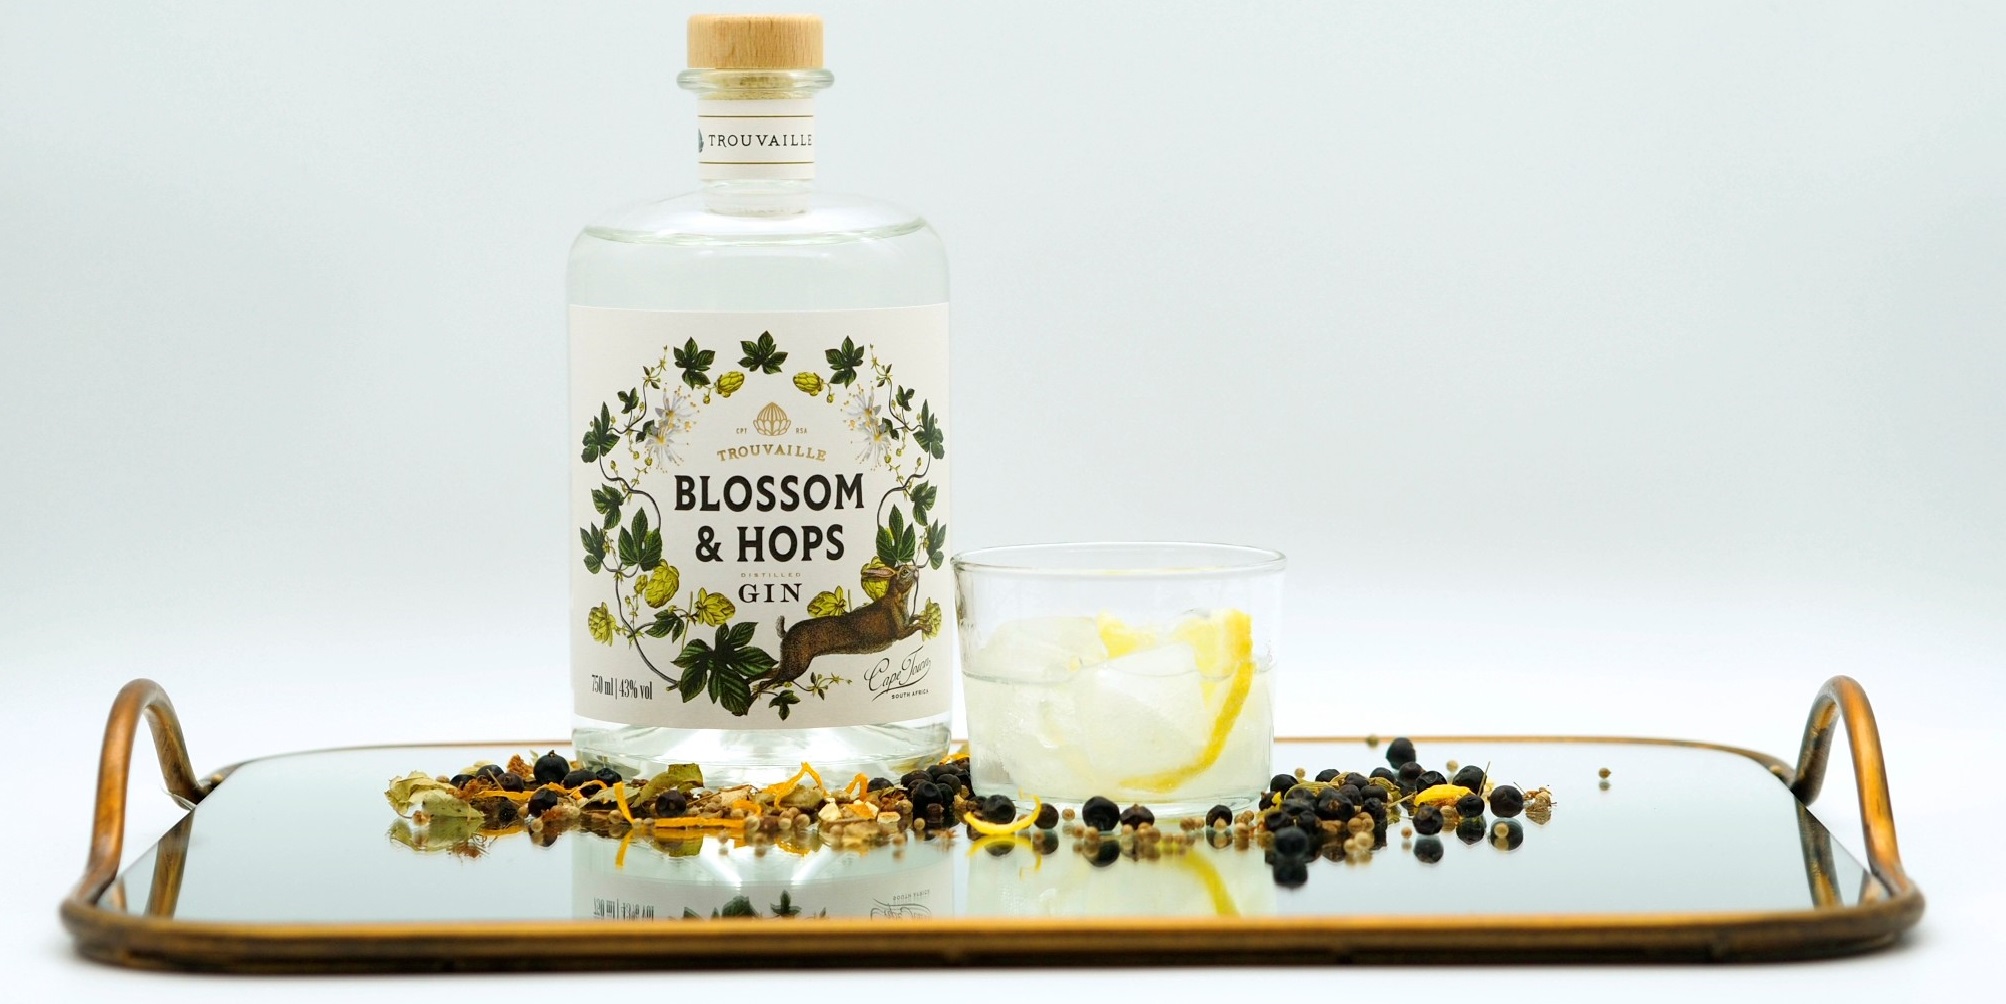 Blossom & Hops Gin